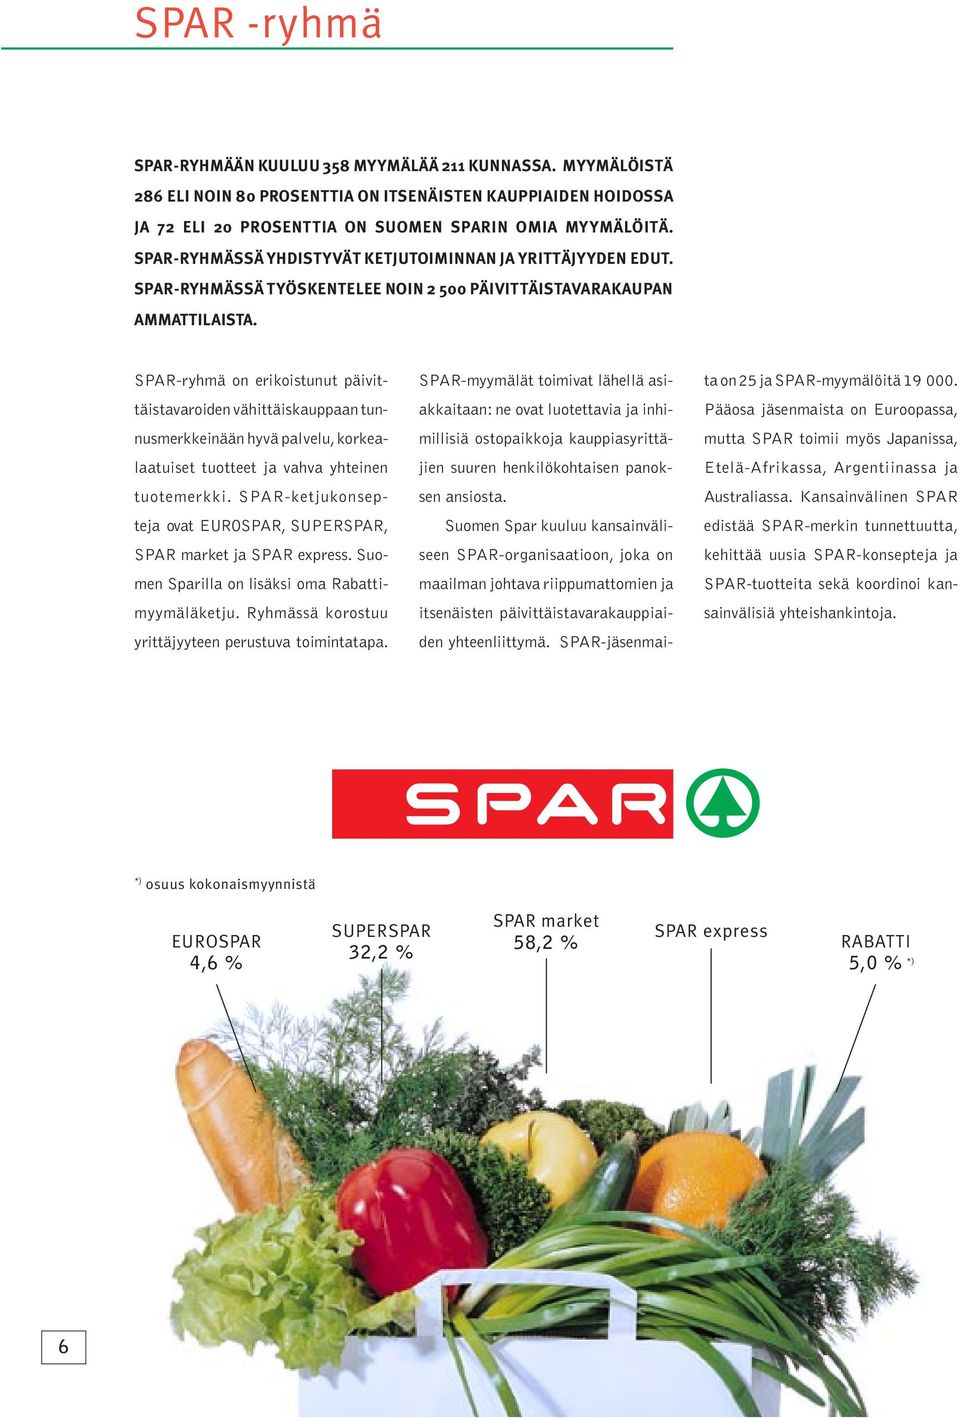 SPAR-ryhmä on erikoistunut päivittäistavaroiden vähittäiskauppaan tunnusmerkkeinään hyvä palvelu, korkealaatuiset tuotteet ja vahva yhteinen tuotemerkki.